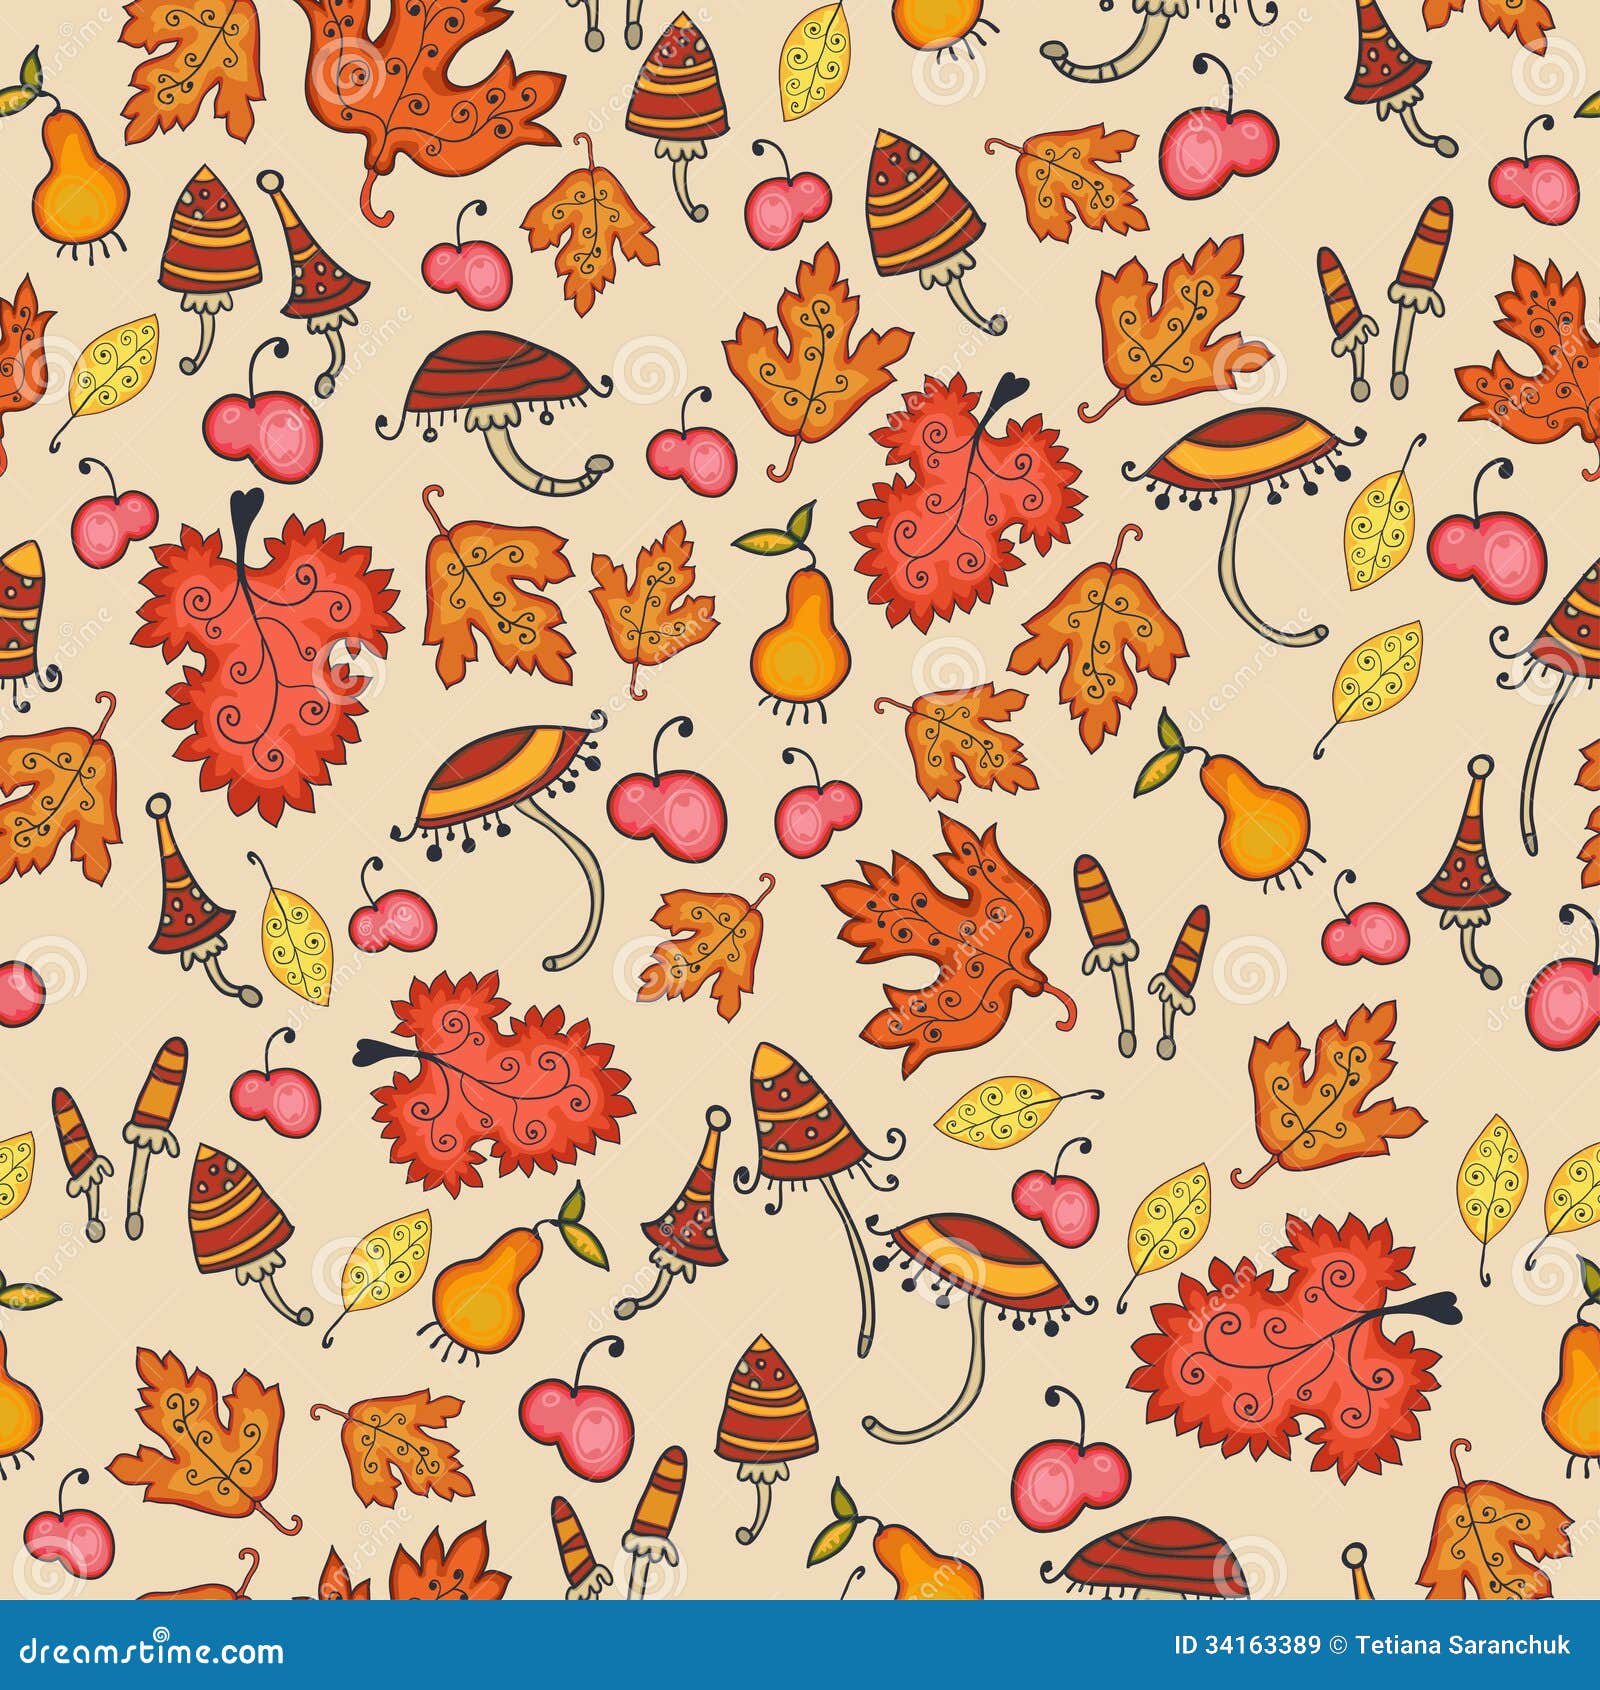 Cute Fall Backgrounds Cute Fall Wallpaper Thanksgiving Wallpaper